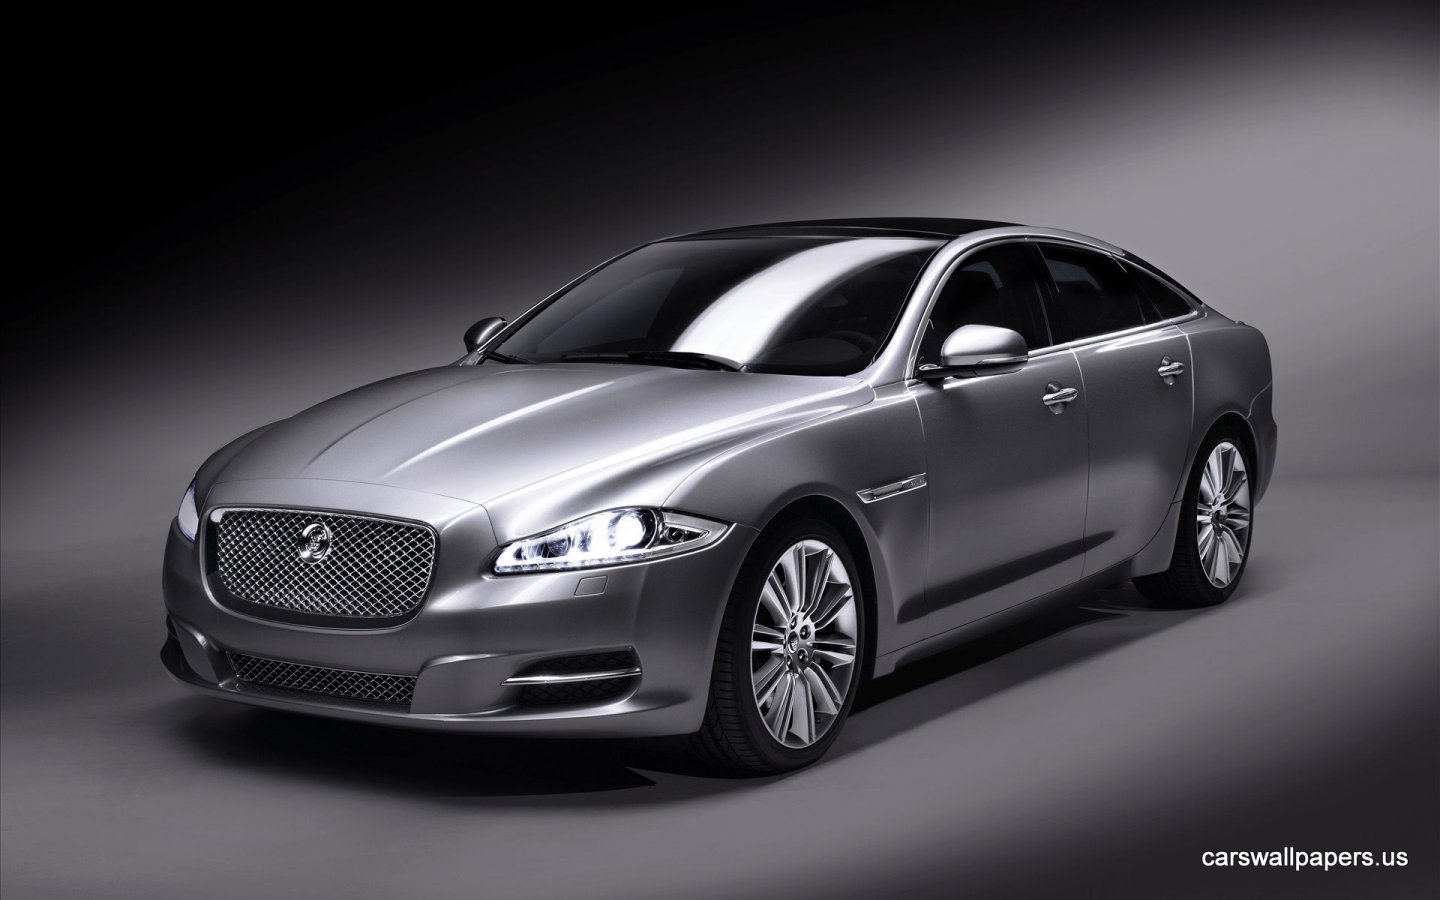 jaguar car wallpaper,land vehicle,vehicle,luxury vehicle,car,automotive design